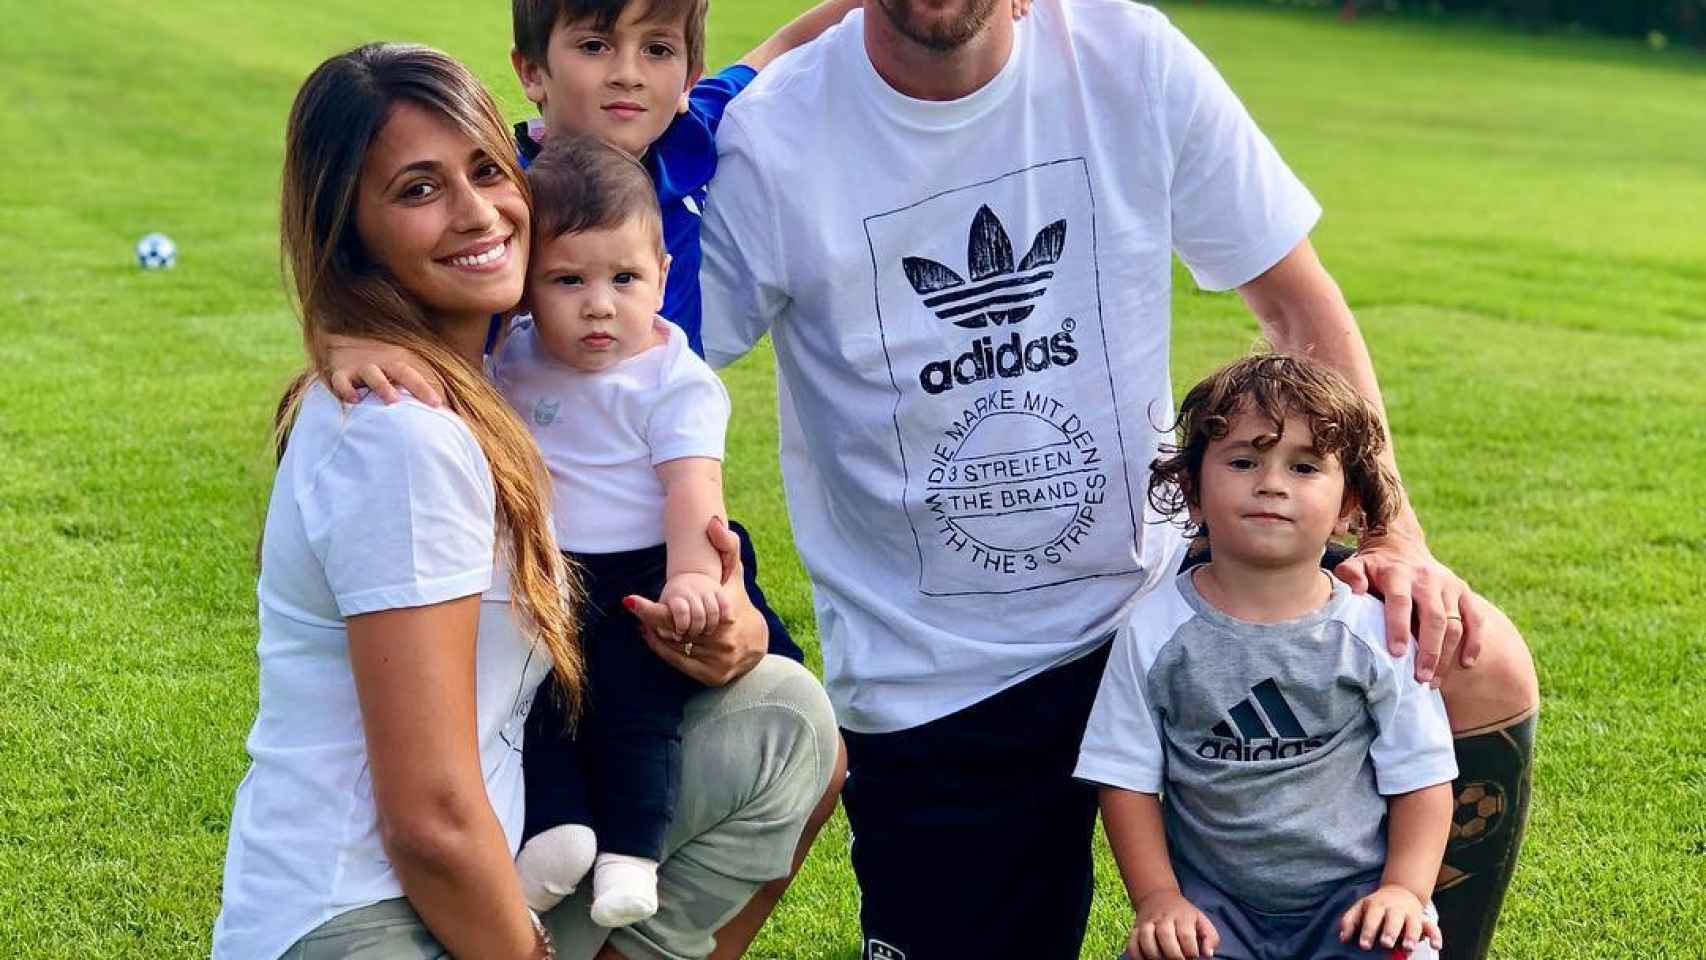 Antonella Roccuzzo con Messi y sus pequeños en la casa de la Cerdanya / INSTAGRAM